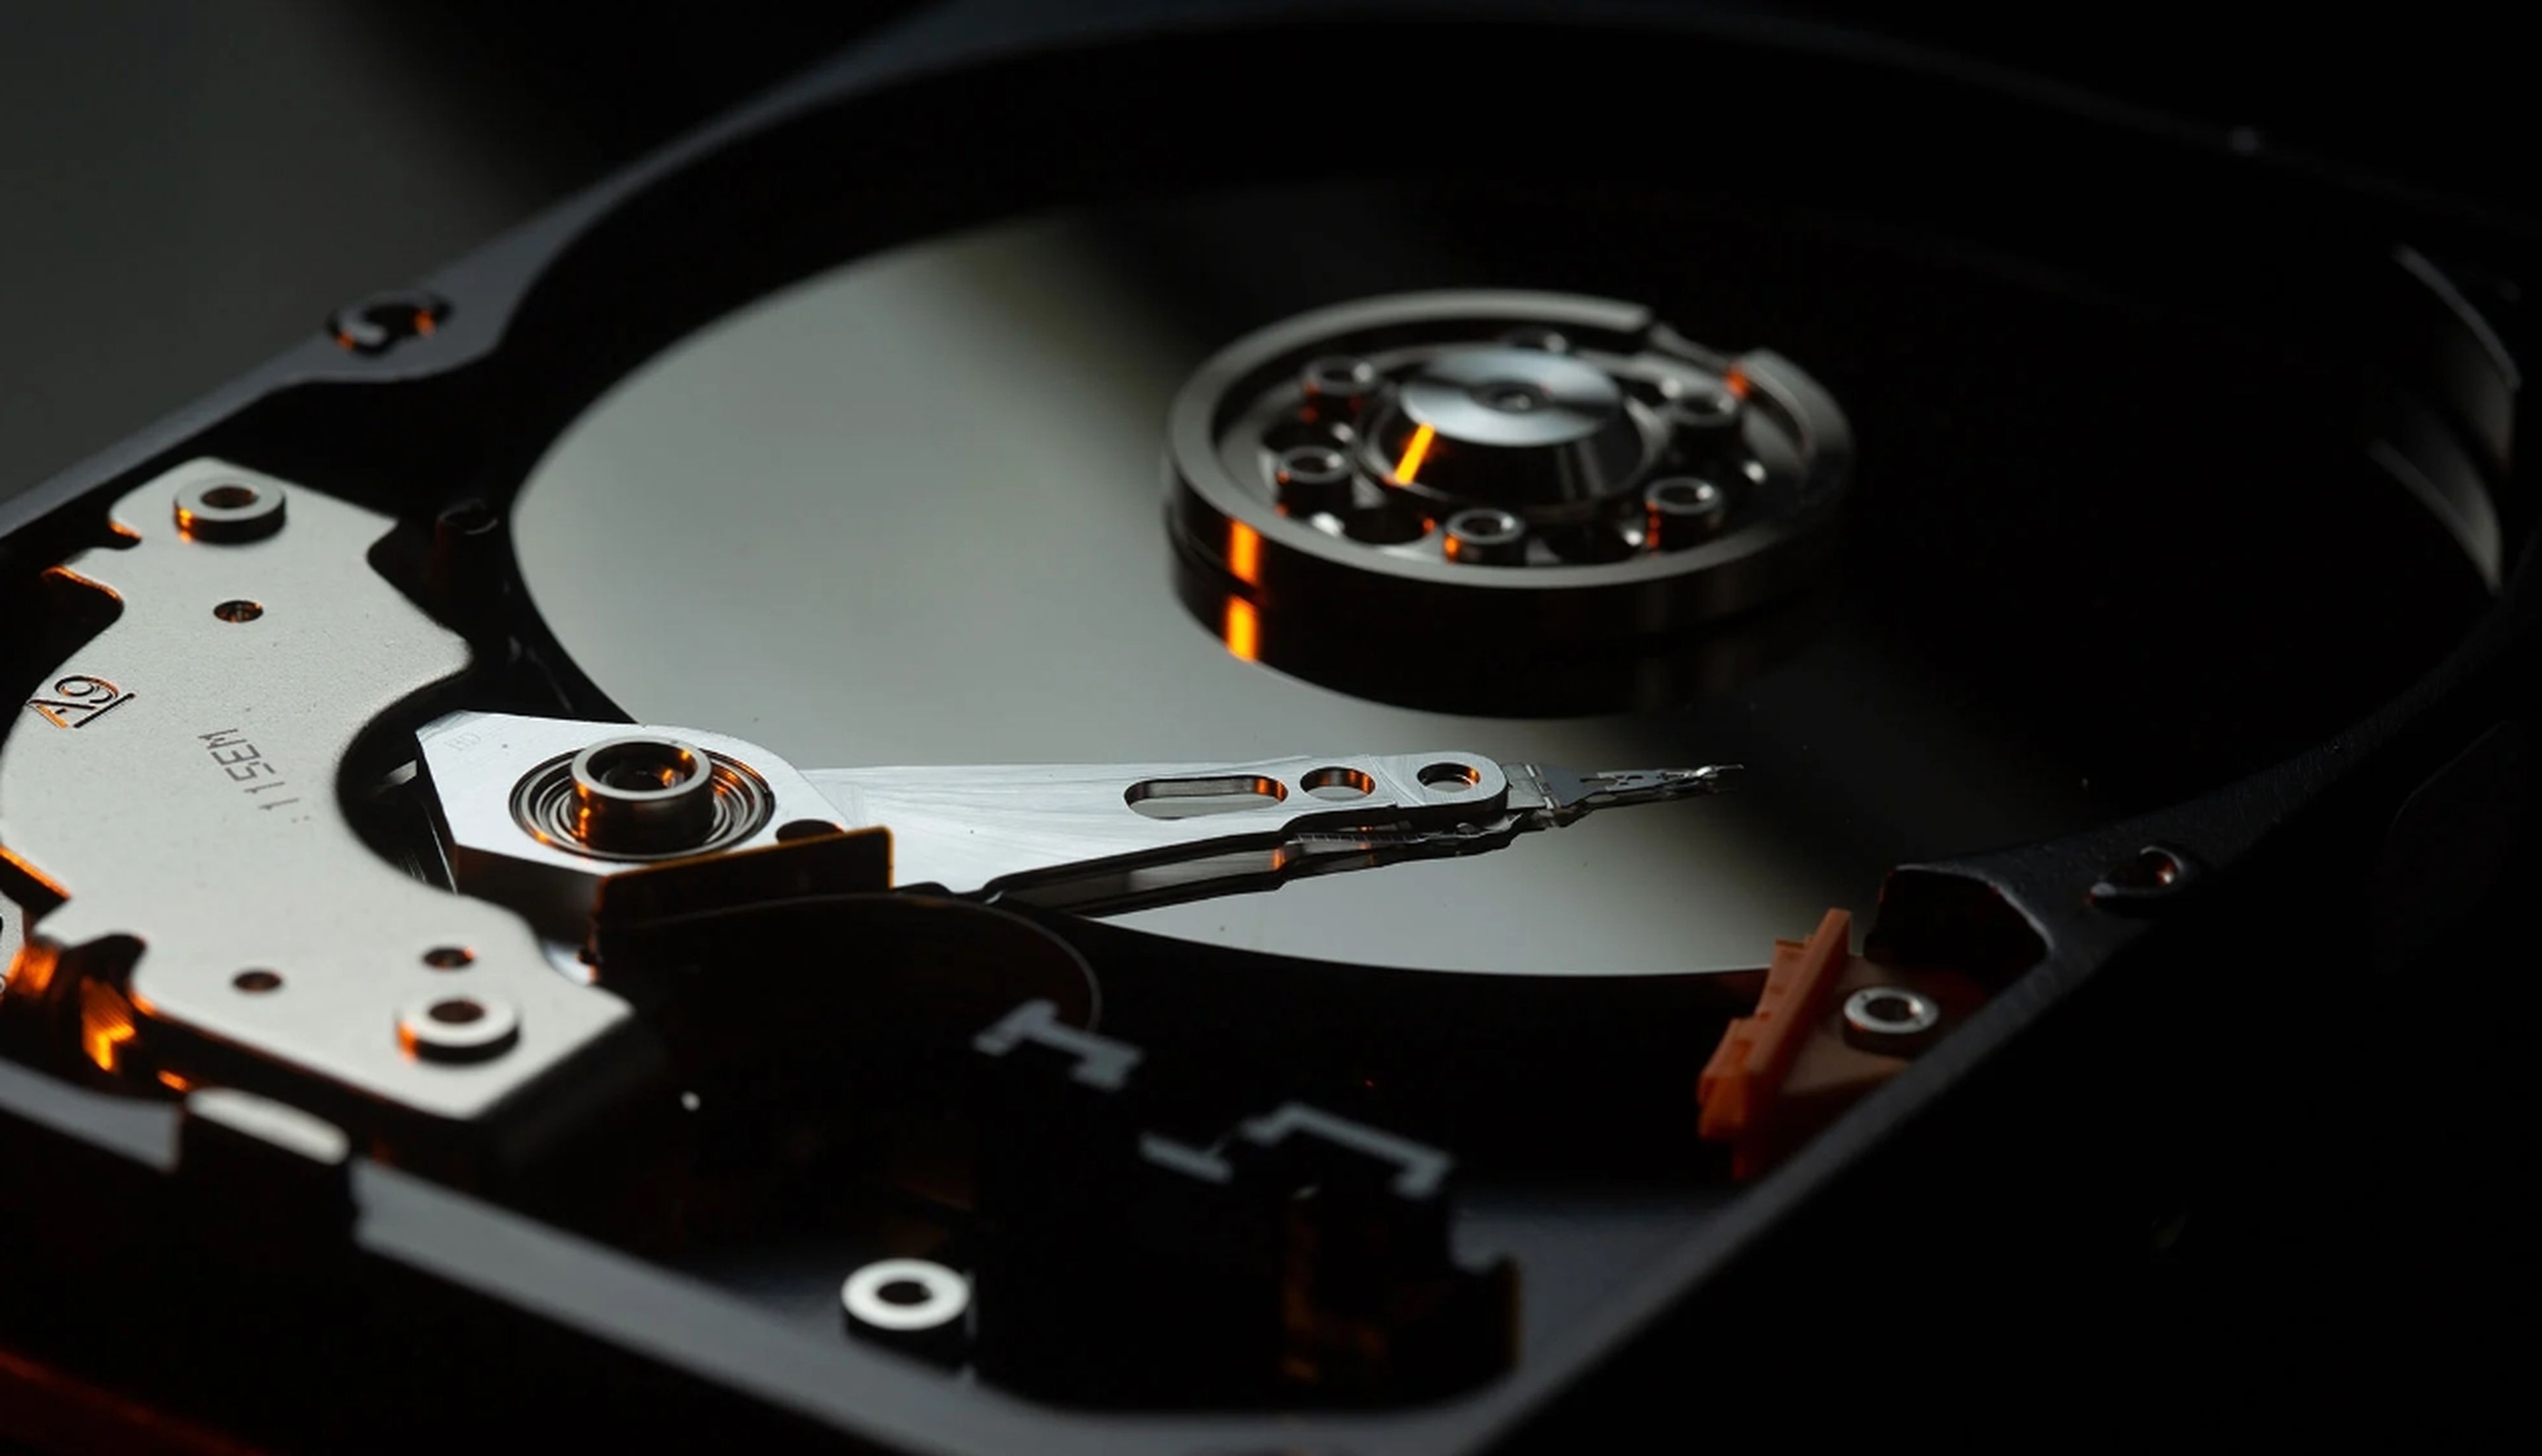 La vida media de una unidad de disco duro HDD no alcanza los 3 años según un nuevo estudio